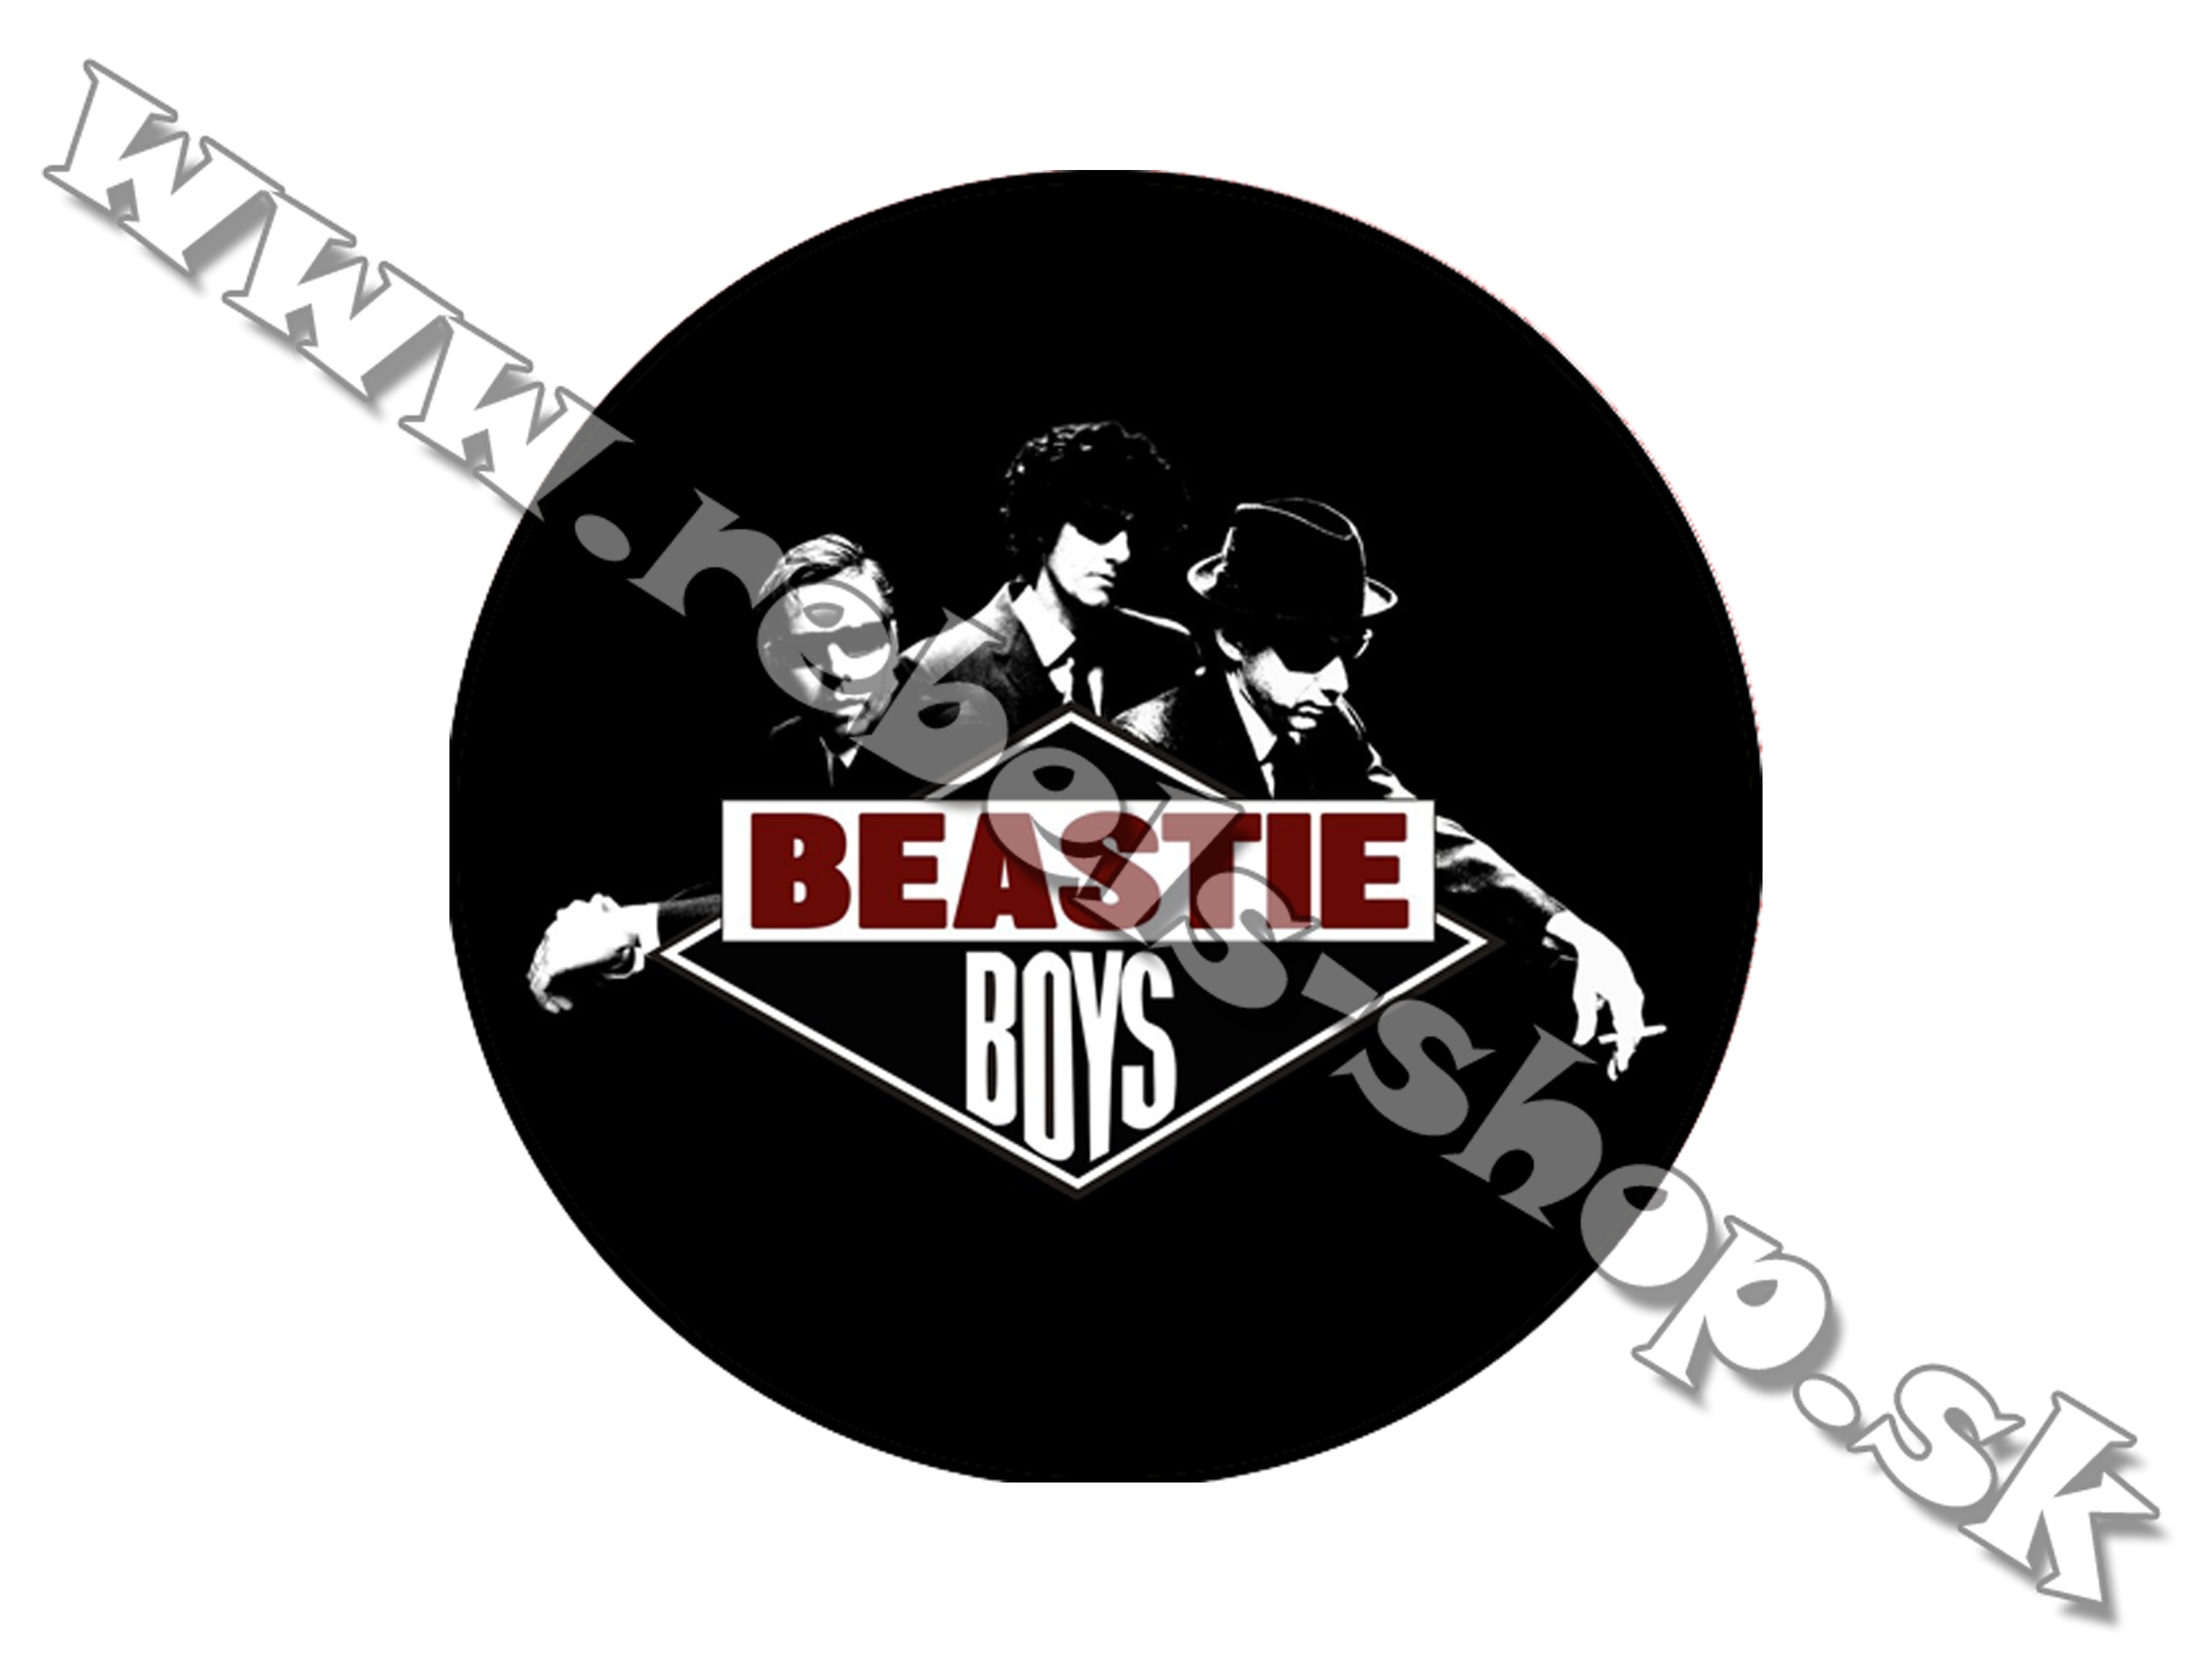 Odznak "Beastie Boys"